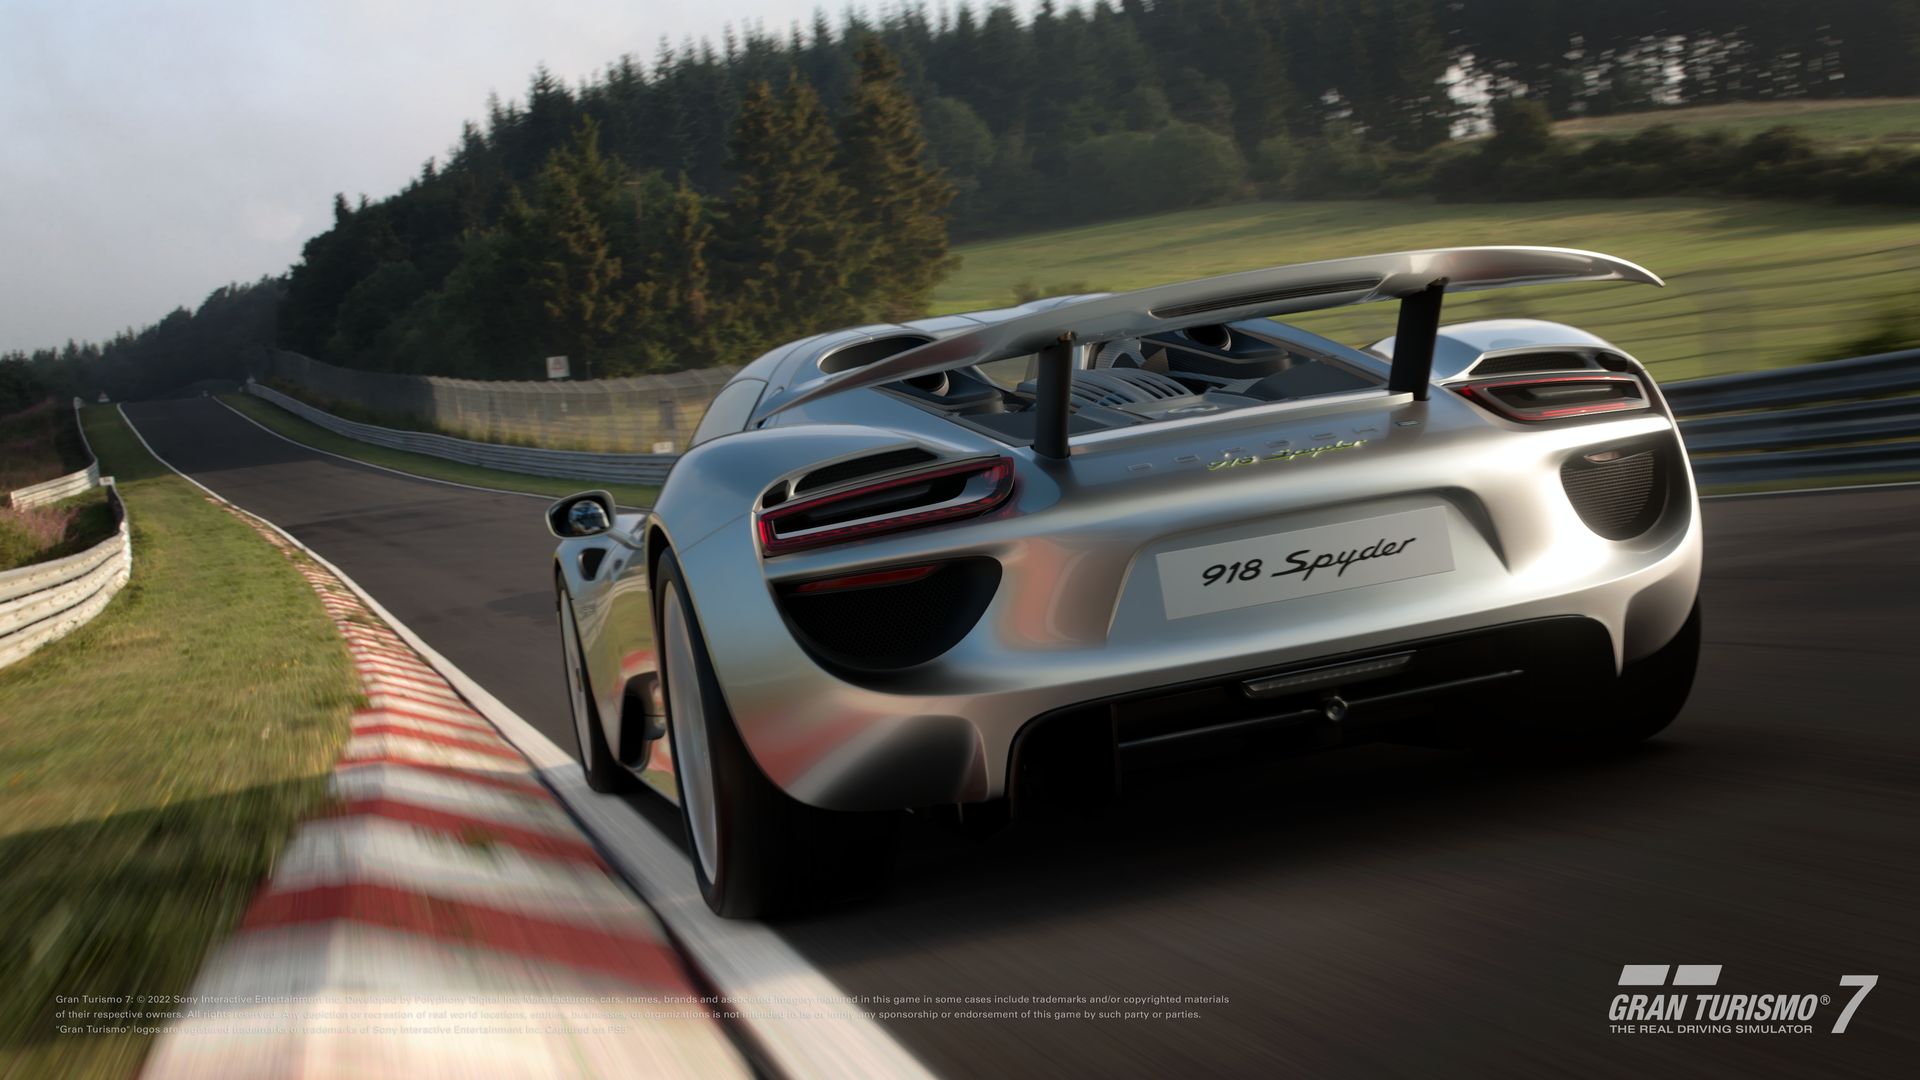 ETA Games - New Arrival - Gran Turismo 7 (R3/Asia) PS4 